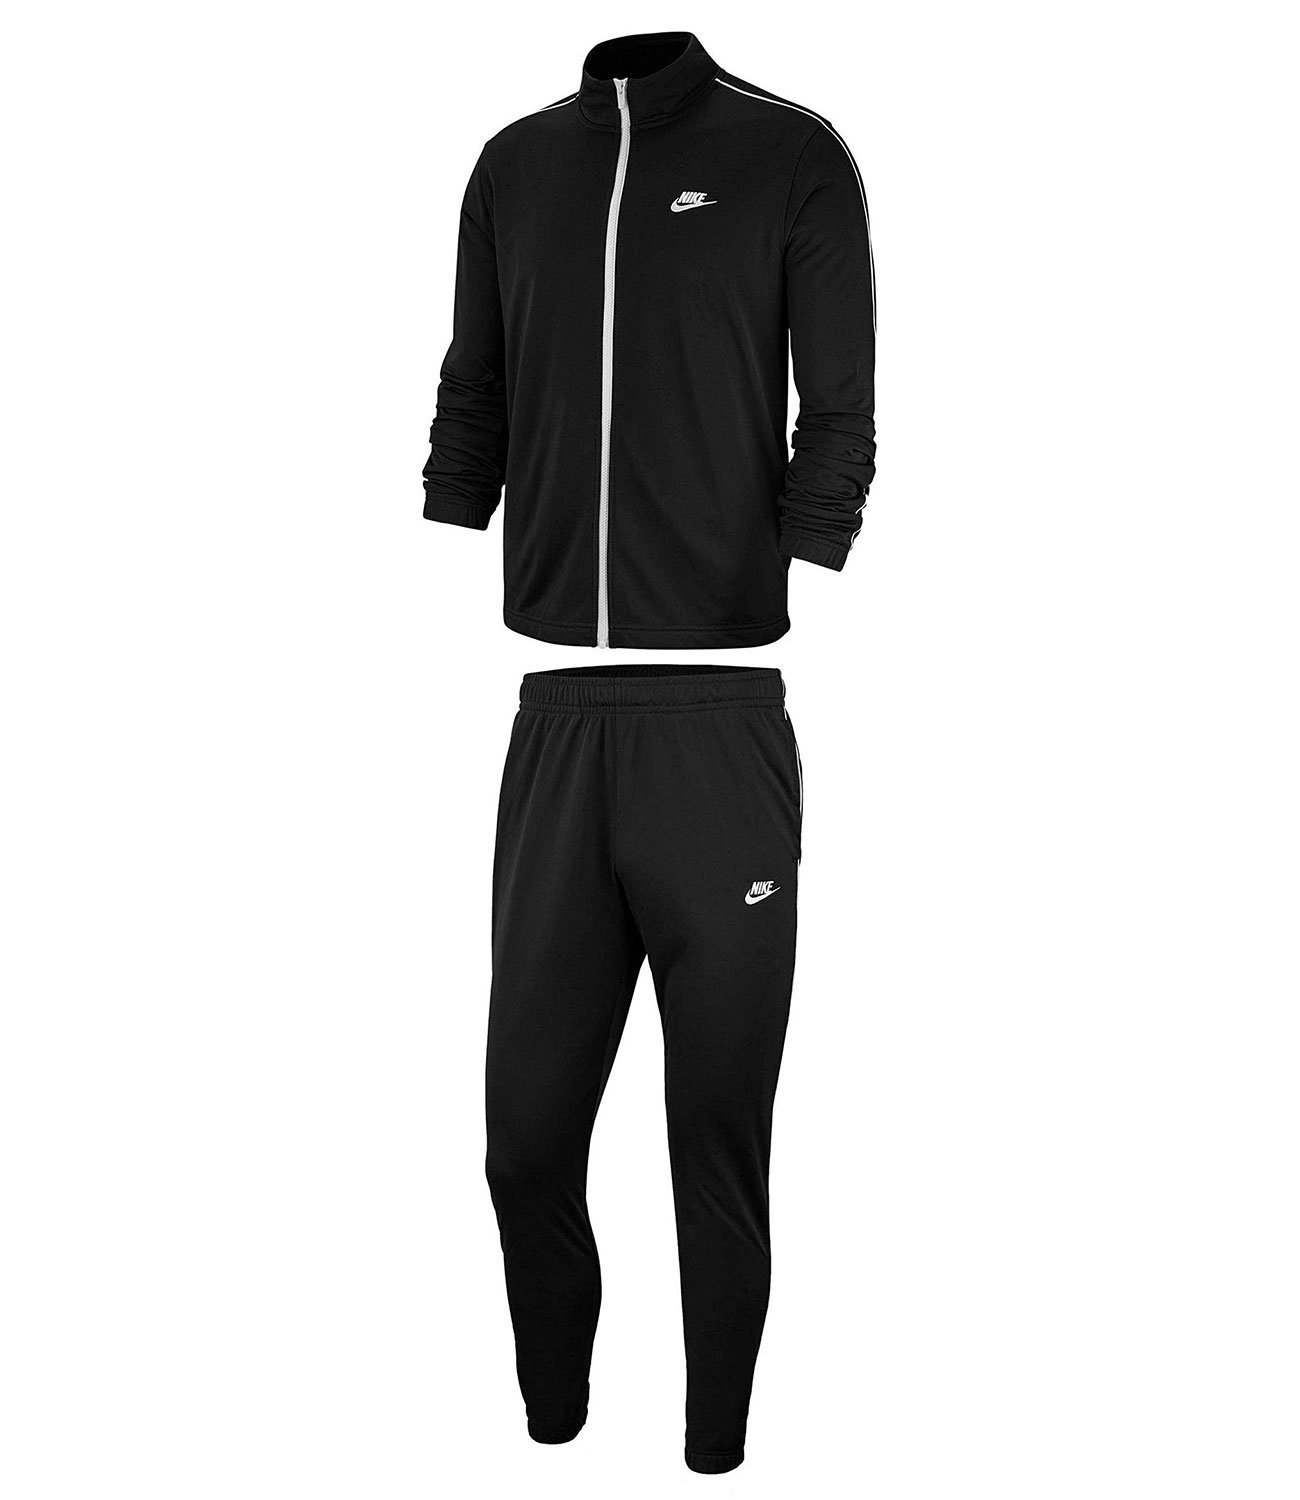 Спортивный костюм 64. Черный спортивный костюм Nike bv3034-010. Nike bv3034-010. Черный спортивный костюм Nike Woven 886511-010. Nike Tracksuit костюм мужской.